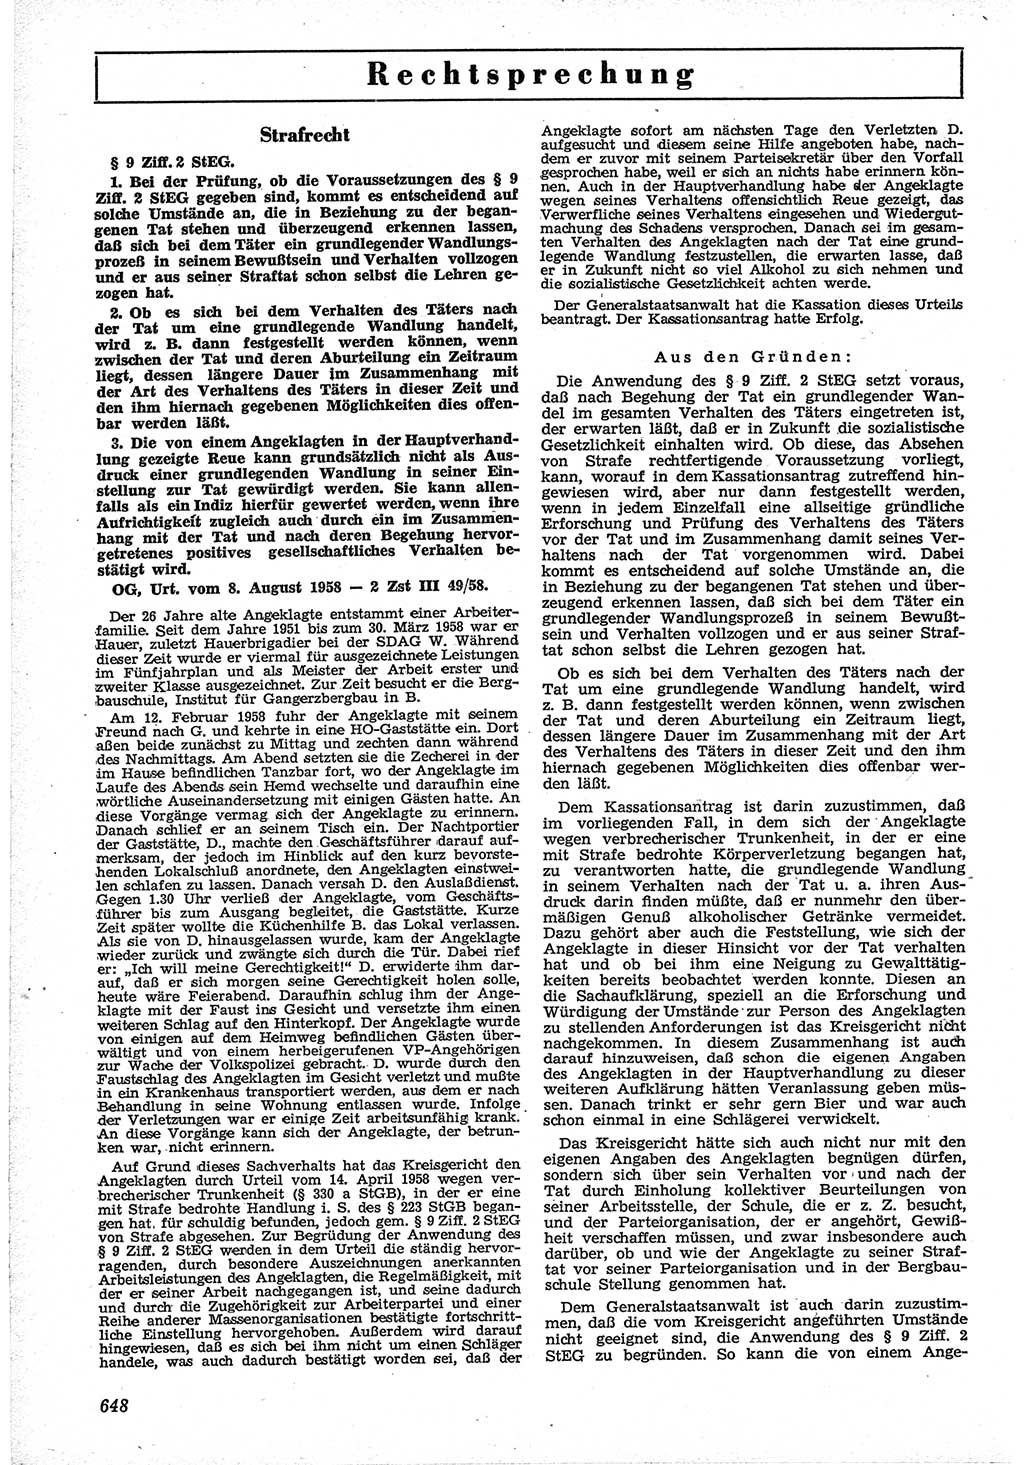 Neue Justiz (NJ), Zeitschrift für Recht und Rechtswissenschaft [Deutsche Demokratische Republik (DDR)], 12. Jahrgang 1958, Seite 648 (NJ DDR 1958, S. 648)